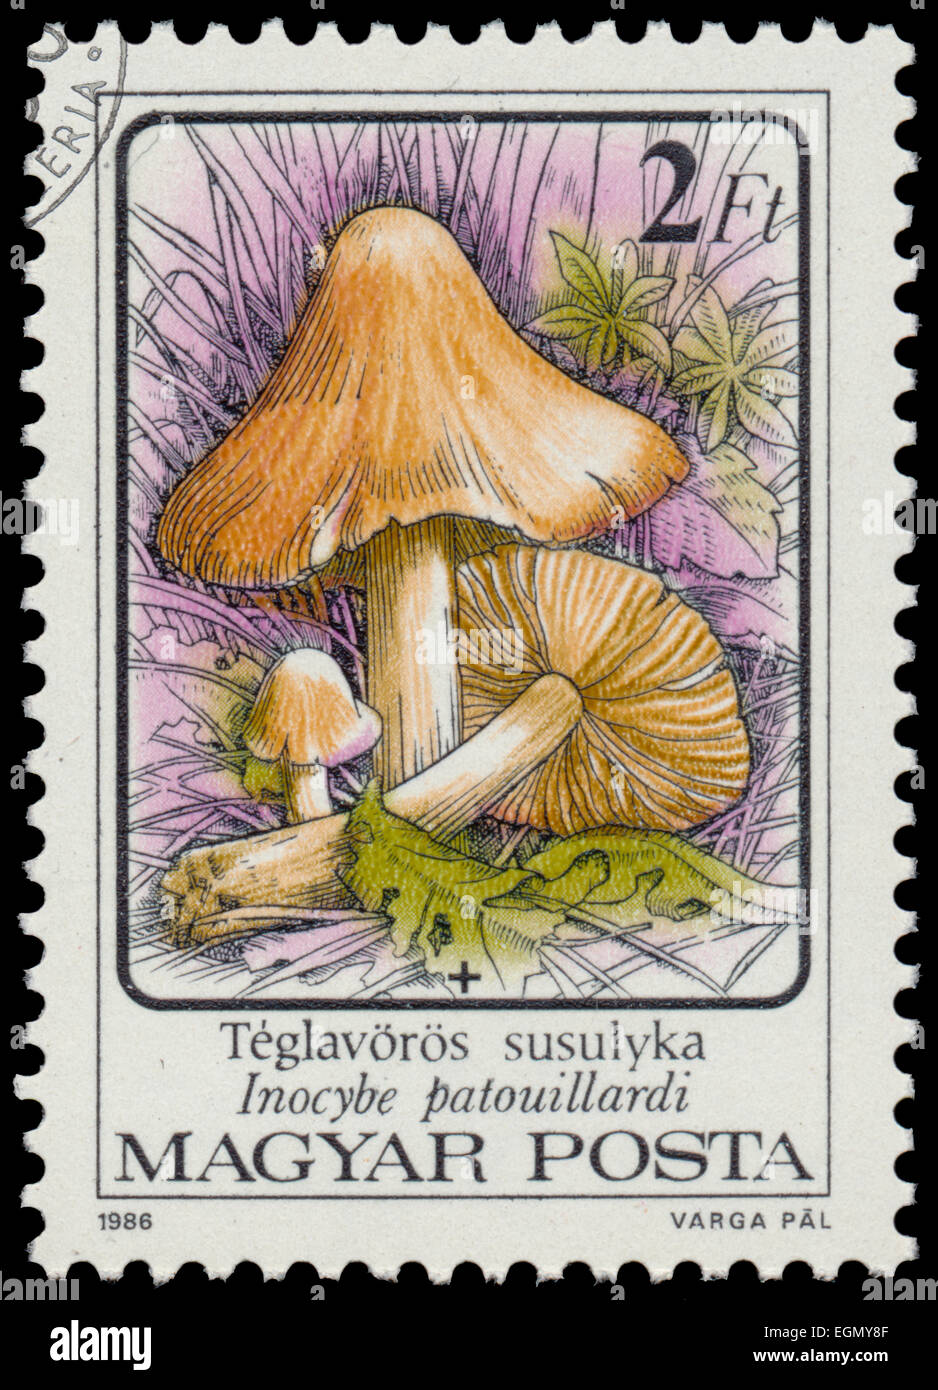 HUNGARY - CIRCA 1986: A stamp printed in Hungary shows Poisonous mushrooms Inocybe erubescens - Inocybe patouillardi, circa 1986 Stock Photo